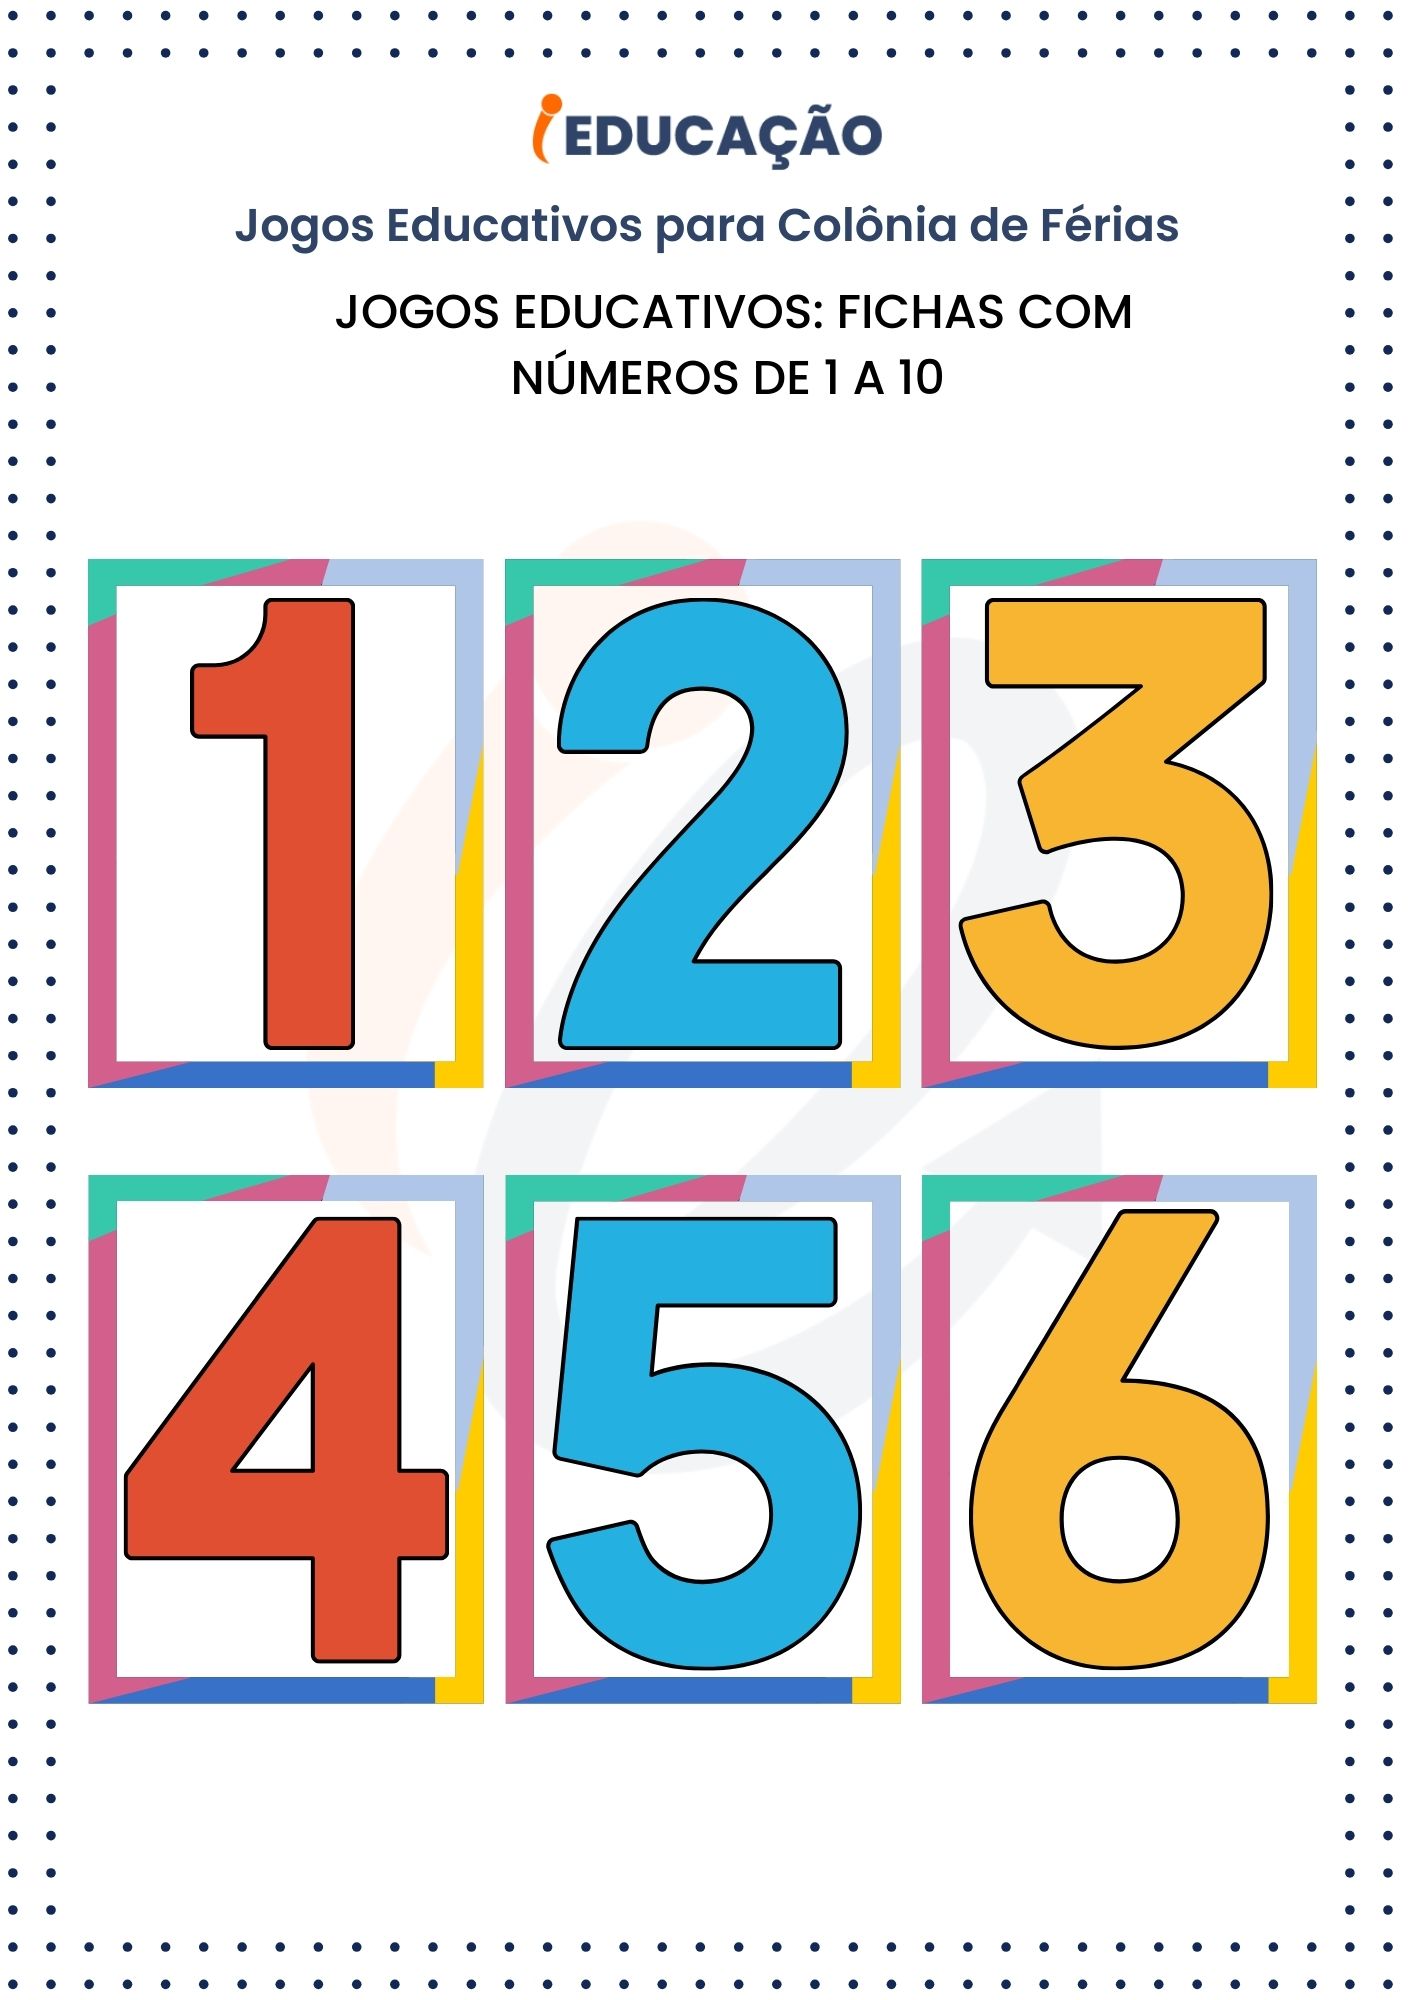 Jogos Educativos_ Fichas com Números de 1 a 10 para Imprimir